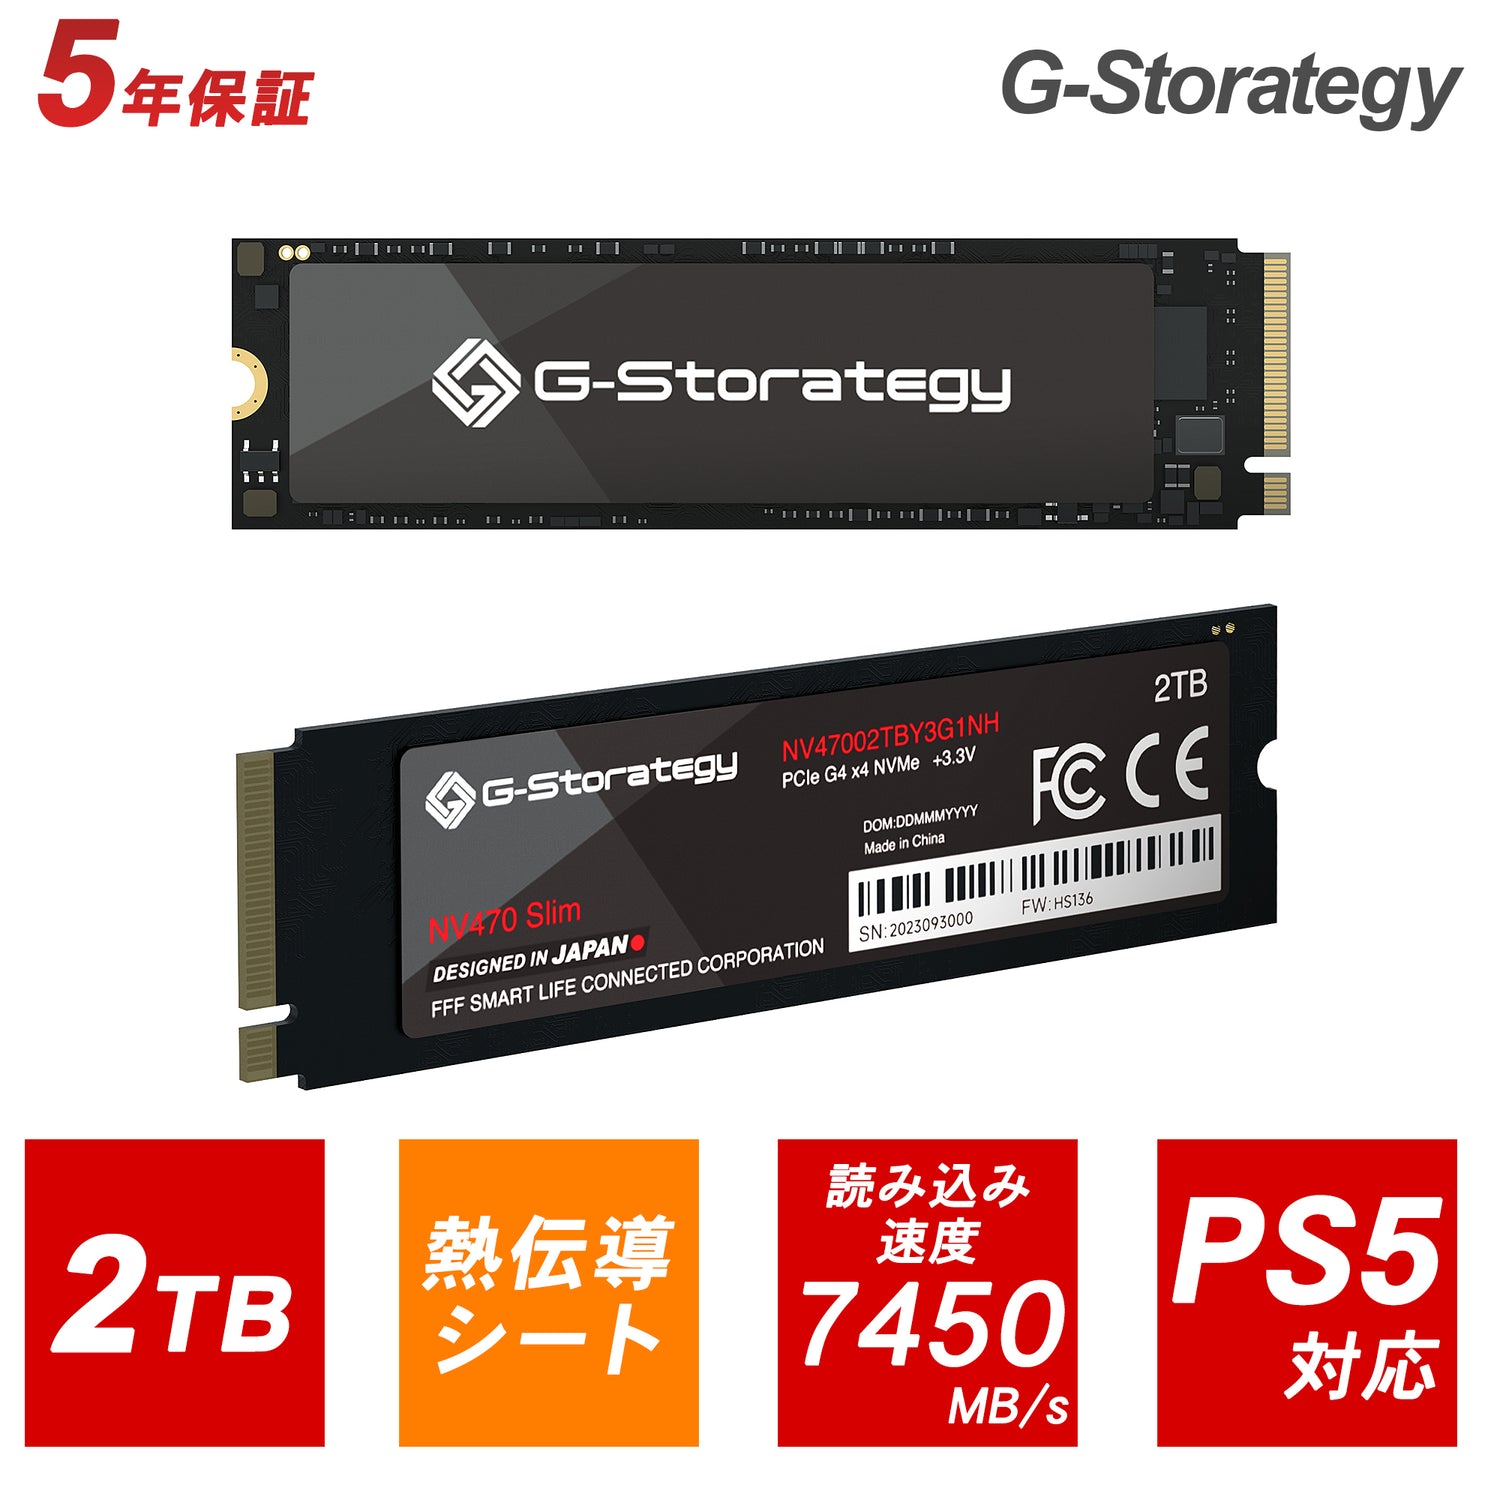 【公式】G-Storategy SSD 銅熱伝導シート 2TB PS5対応 Gen4×4 最大読込:7450MB/s 最大書込:6750MB/s 5年保証 NV47002TBY3G1NH1